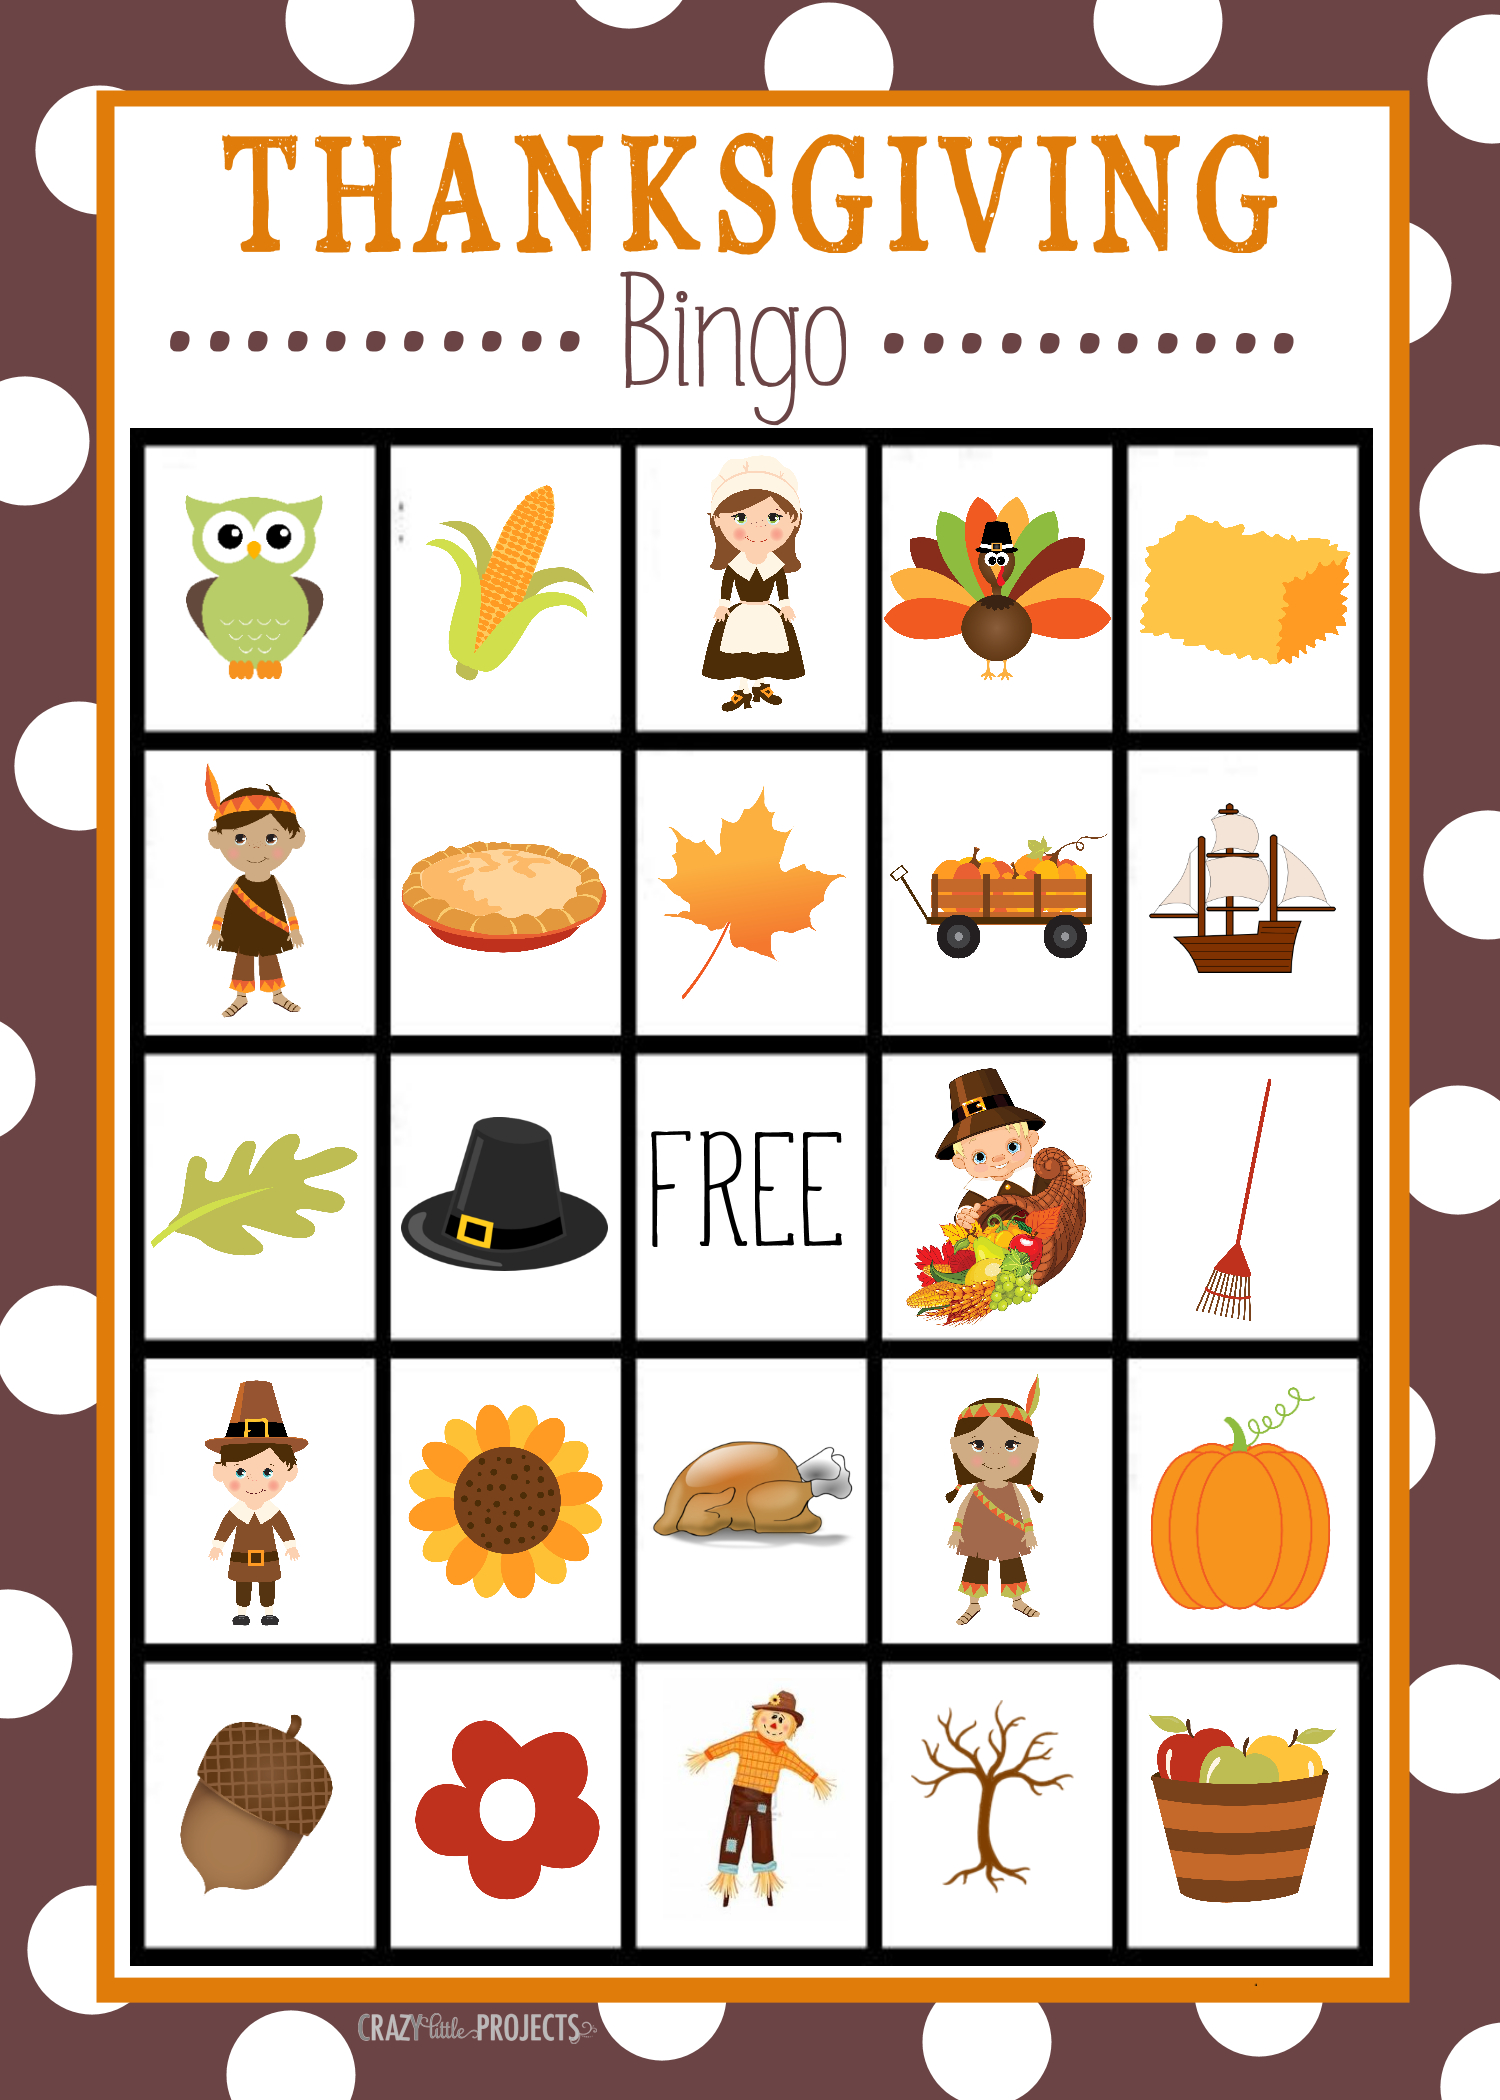 Free Printable Thanksgiving Bingo Game | Craft Time | Pinterest - Free Printable For Thanksgiving